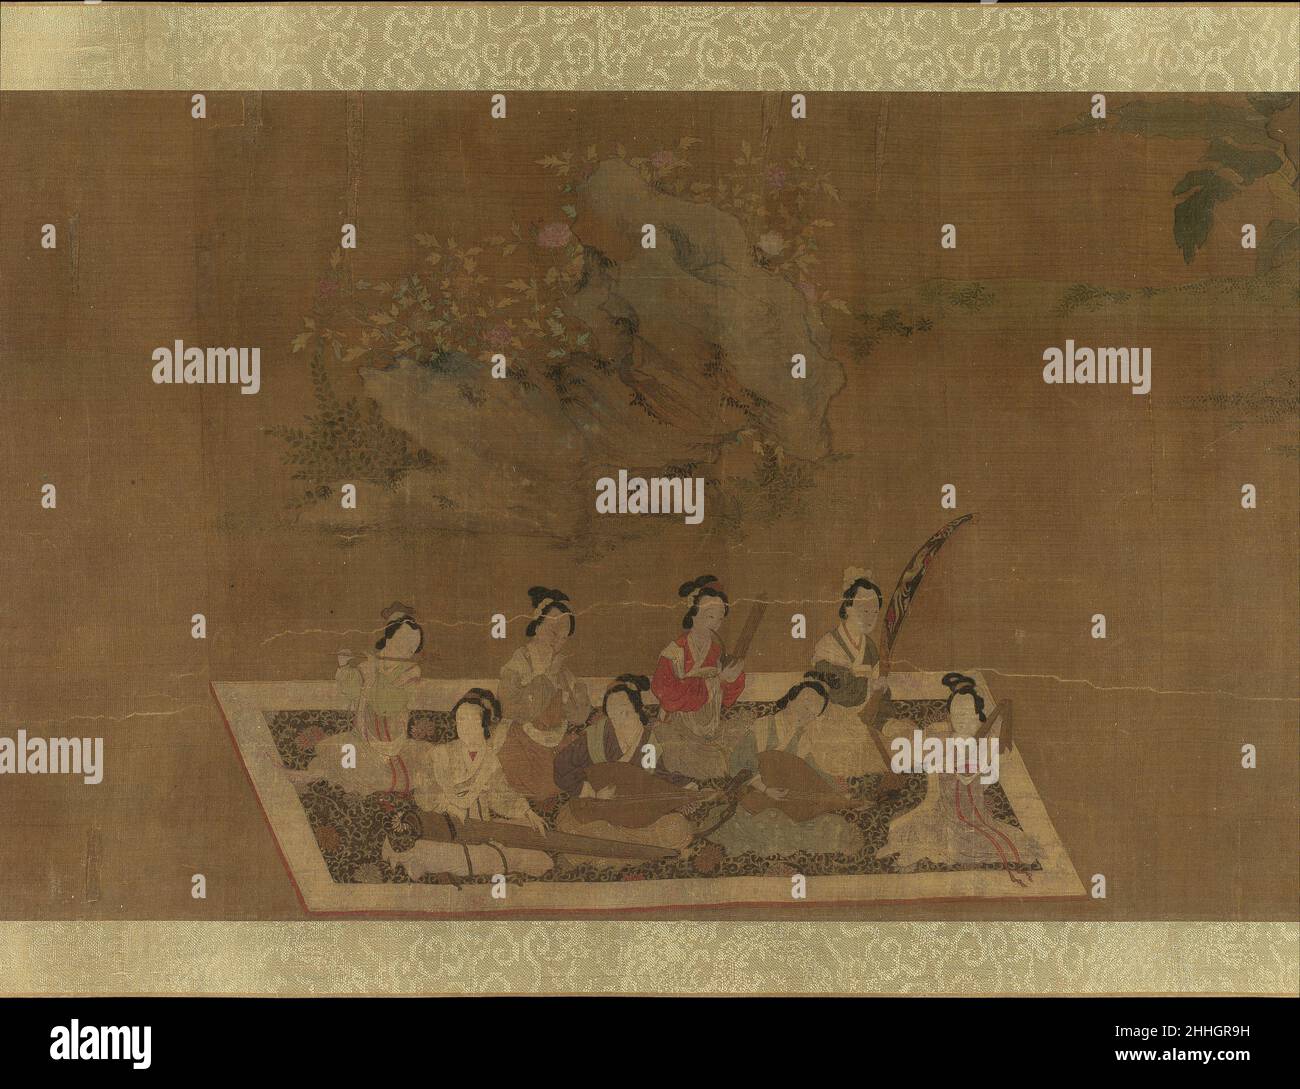 Lady su hui et son verset Puzzle 16th siècle dans le style de Qiu Ying Chinois cette scène apparaît dans une copie ultérieure d'une peinture Tang-dynastie illustrant l'histoire d'une légende littéraire, Lady su hui, qui était censé avoir vécu à la fin du quatrième siècle.La datation de la peinture originale est soutenue par les types d'instruments qui y sont représentés.La harpe (konghou) et la pipa jouées avec un plectrum ont disparu après la rangée Tang.Front, de gauche à droite: qin, pipa, pipa (joué sans plectrum), paibanBack row, de gauche à droite: Dizi, xiao, sheng, konghou.Lady su hui et son verset Puzzle Banque D'Images